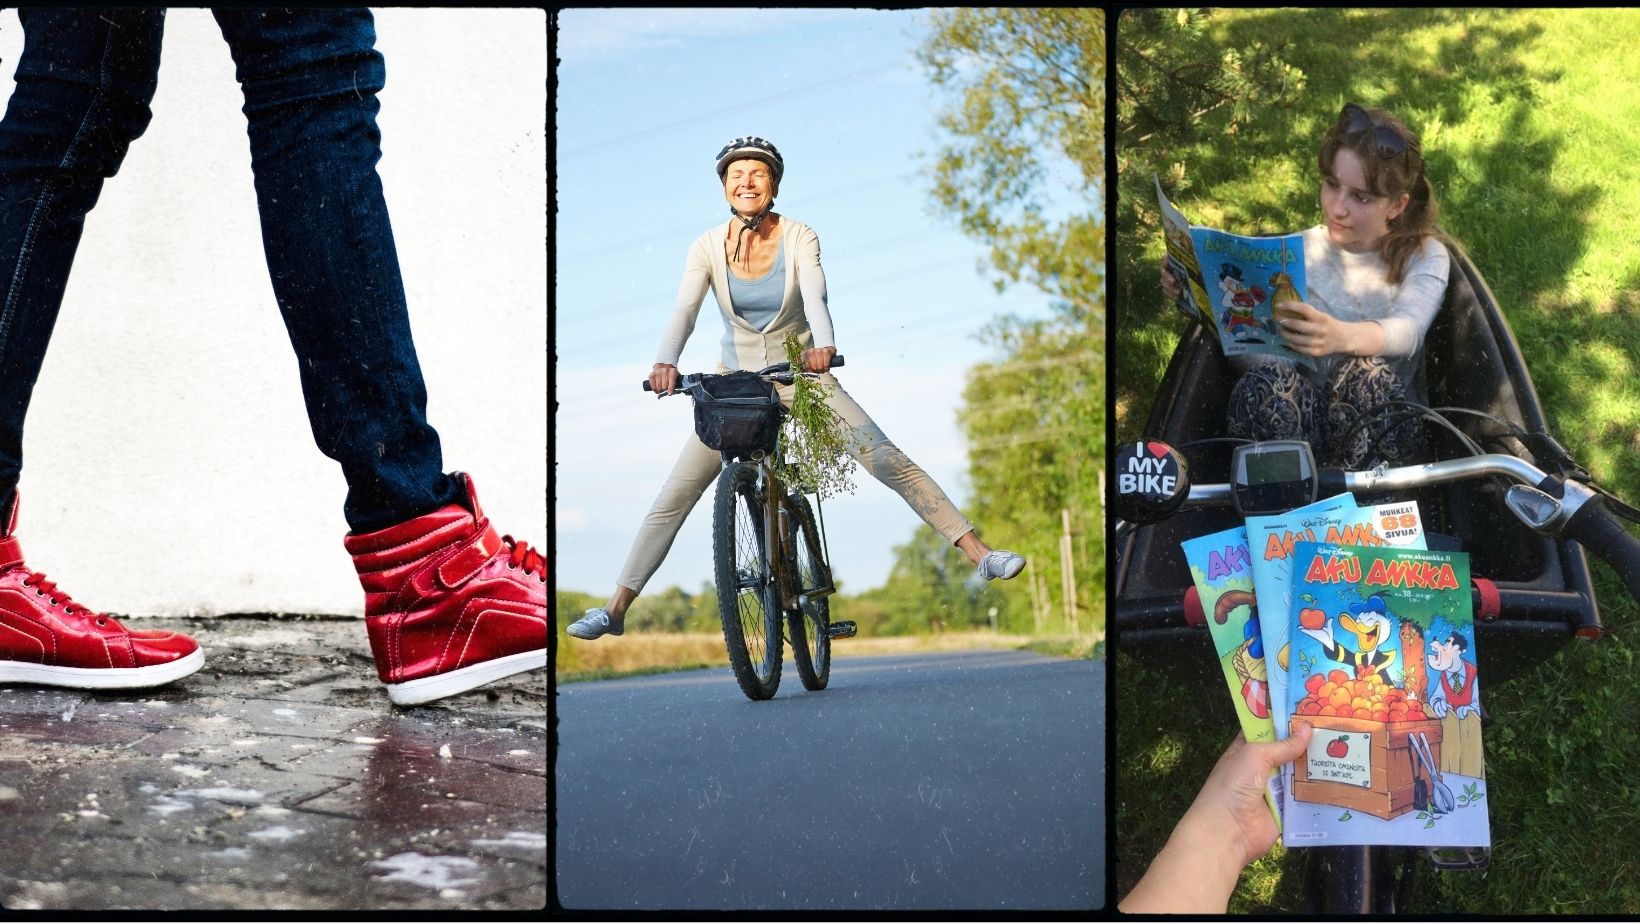 Kolmen kuvan kollaasi. Ensimmäisessä kuvassa näkyy kävelevät jalat mustissa housuissa ja punaisissa lenkkareissa. Toisessa kuvassa nainen ajaa pyörällä kesällä ja kolmennessa luetaan Aku Ankkoja lastipyörän kyydissä.